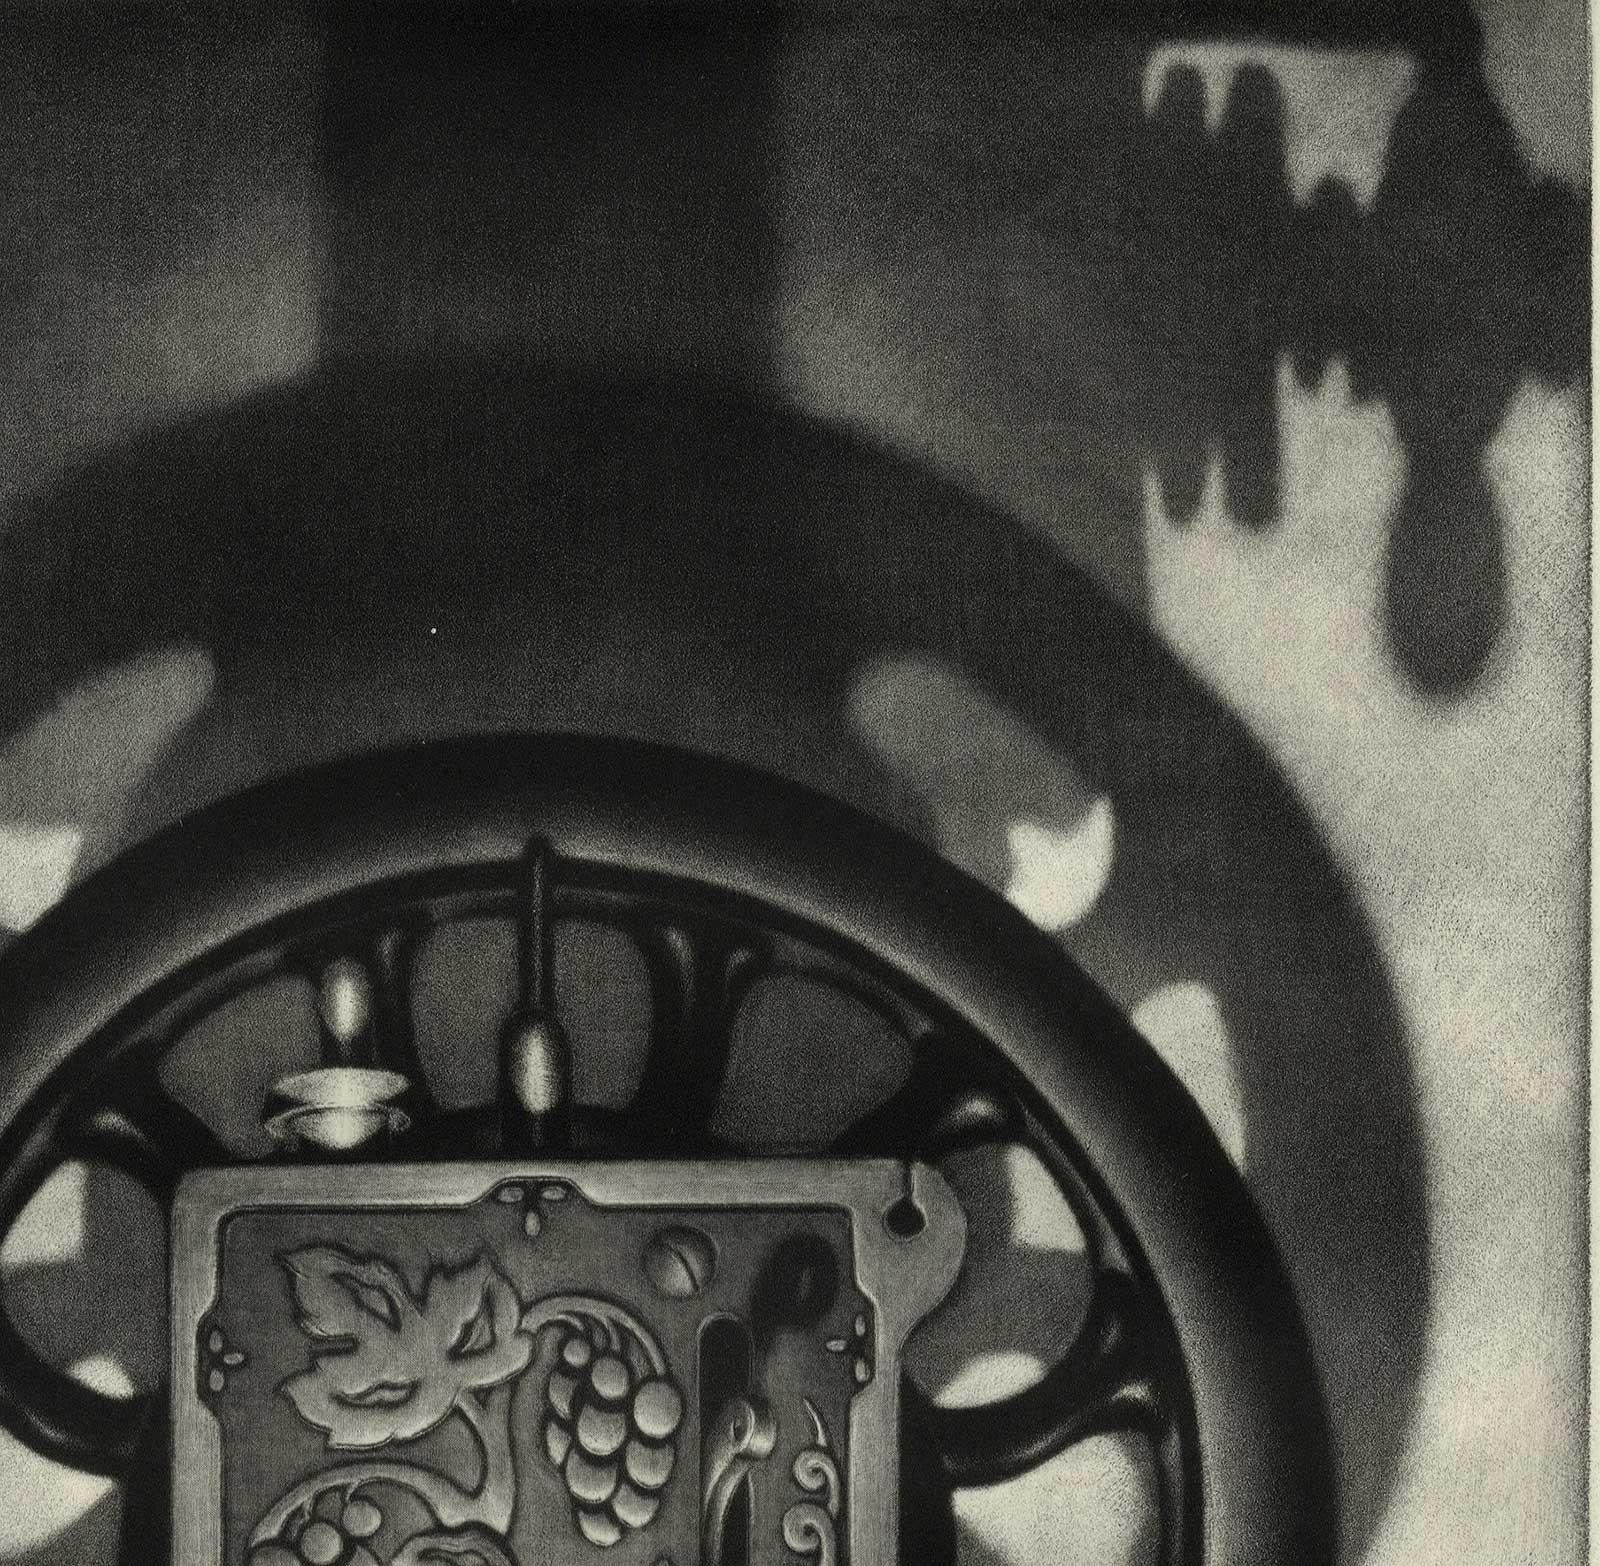 Singer II (Woodgrain, incised metal plate of a Singer typewriter casts shadows) - Print by Carol Wax